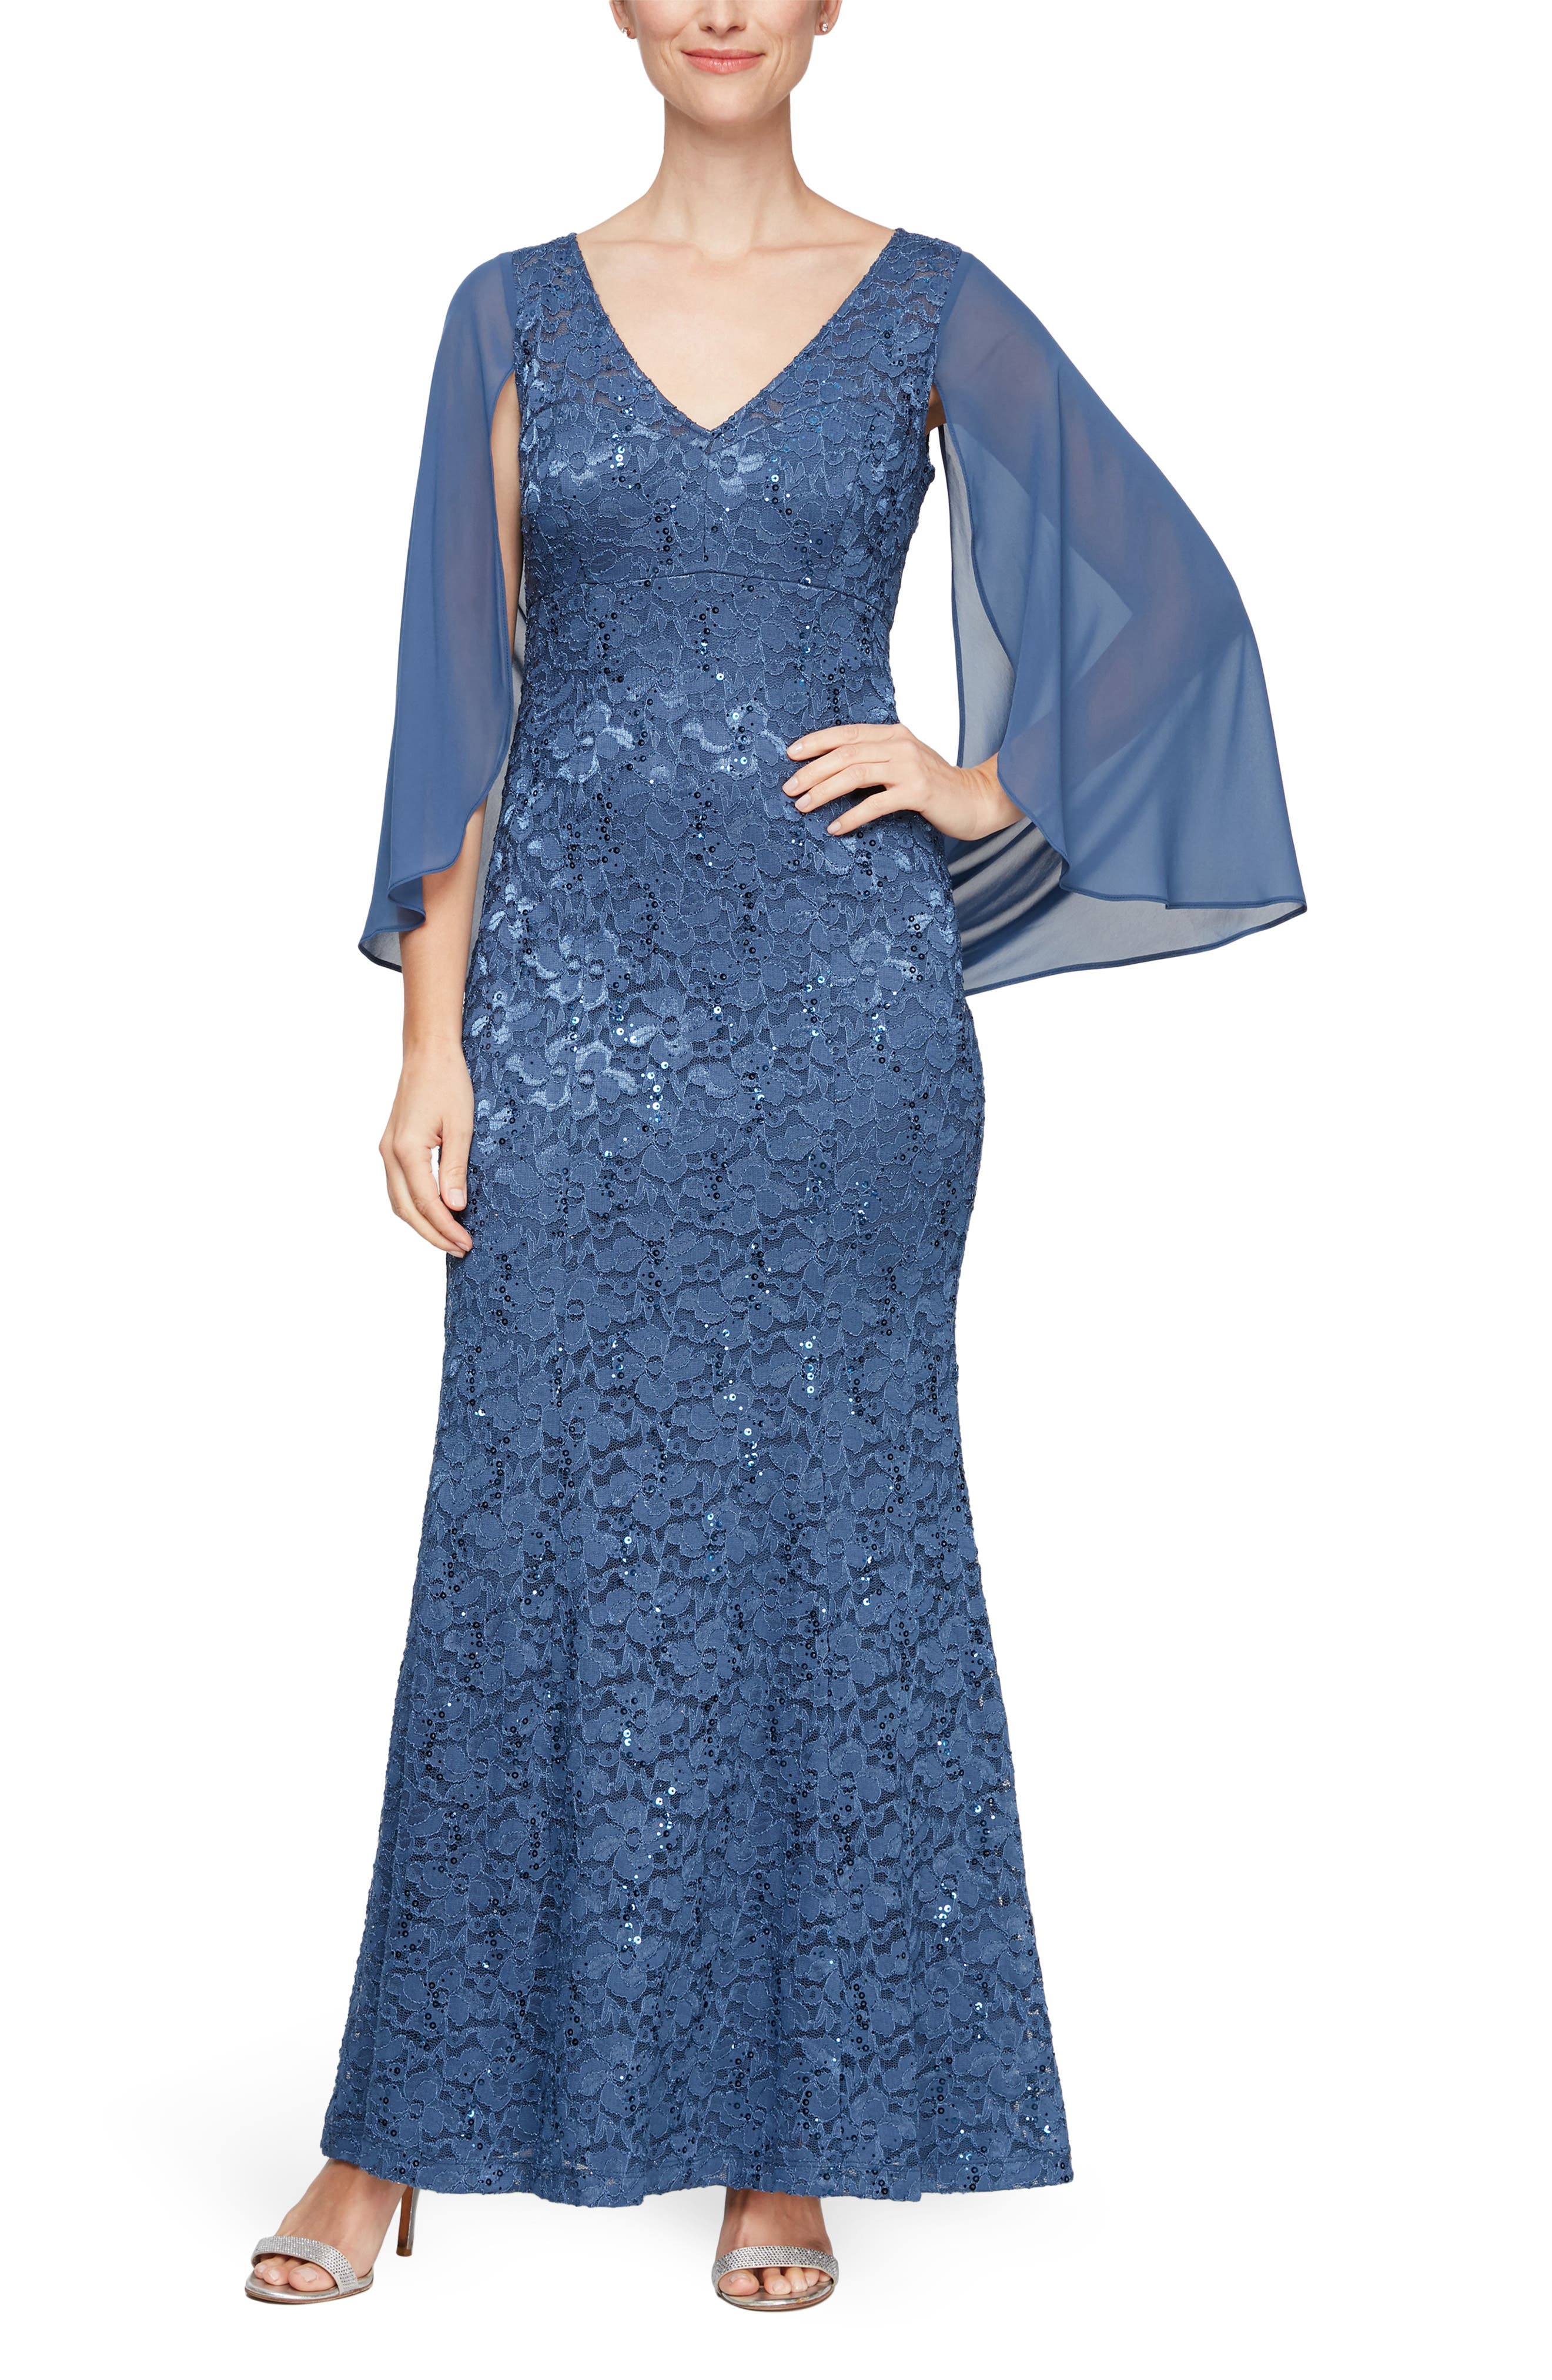 Blue Long Sleeve Dresses for Women ...